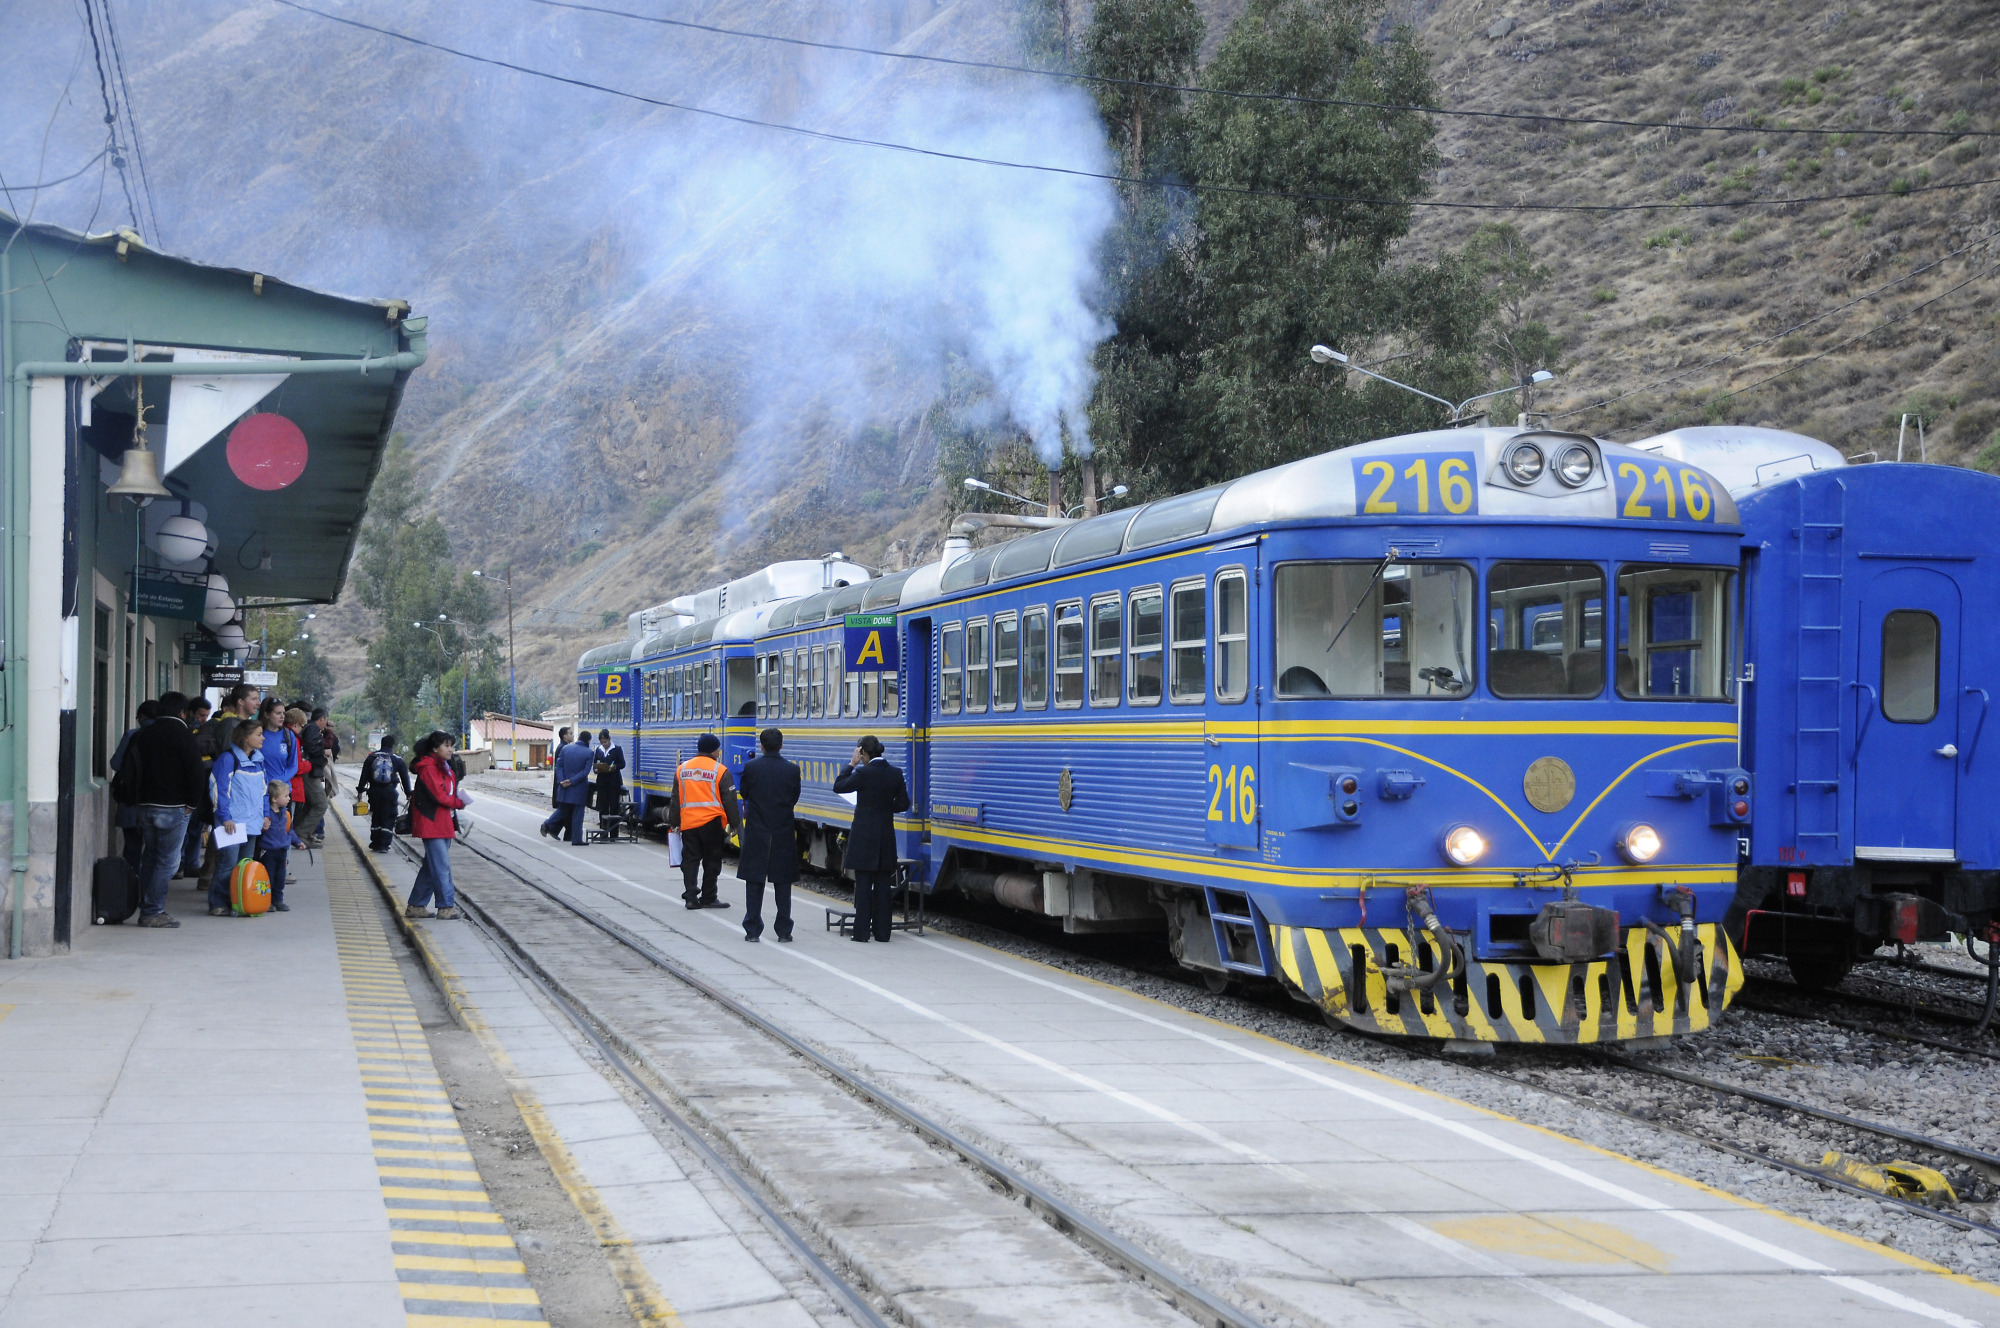 Ollantaytambo - Train Station | Machu Picchu | Geography im Austria-Forum